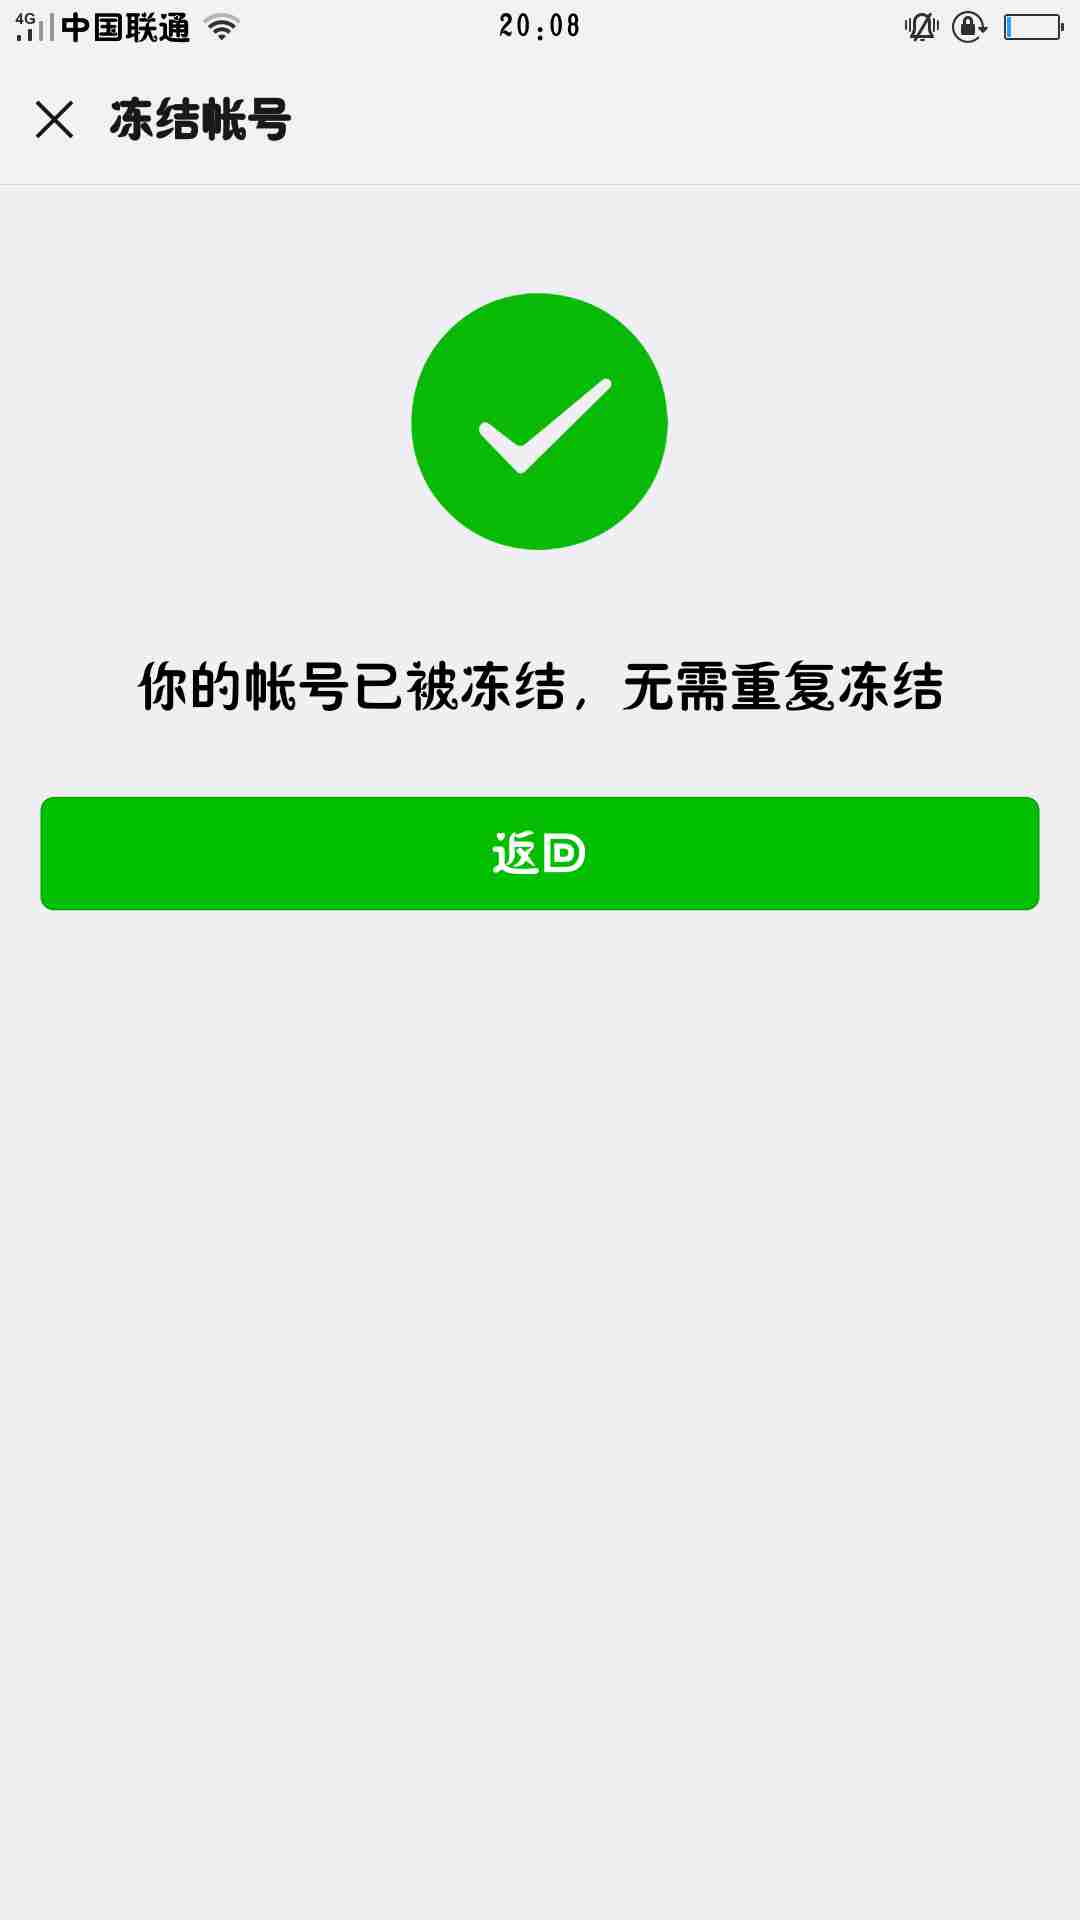 【微信被外地公安局限制支出】要求我人带身份证从福建省跑去从没去过的河南省当面解决 - 知乎